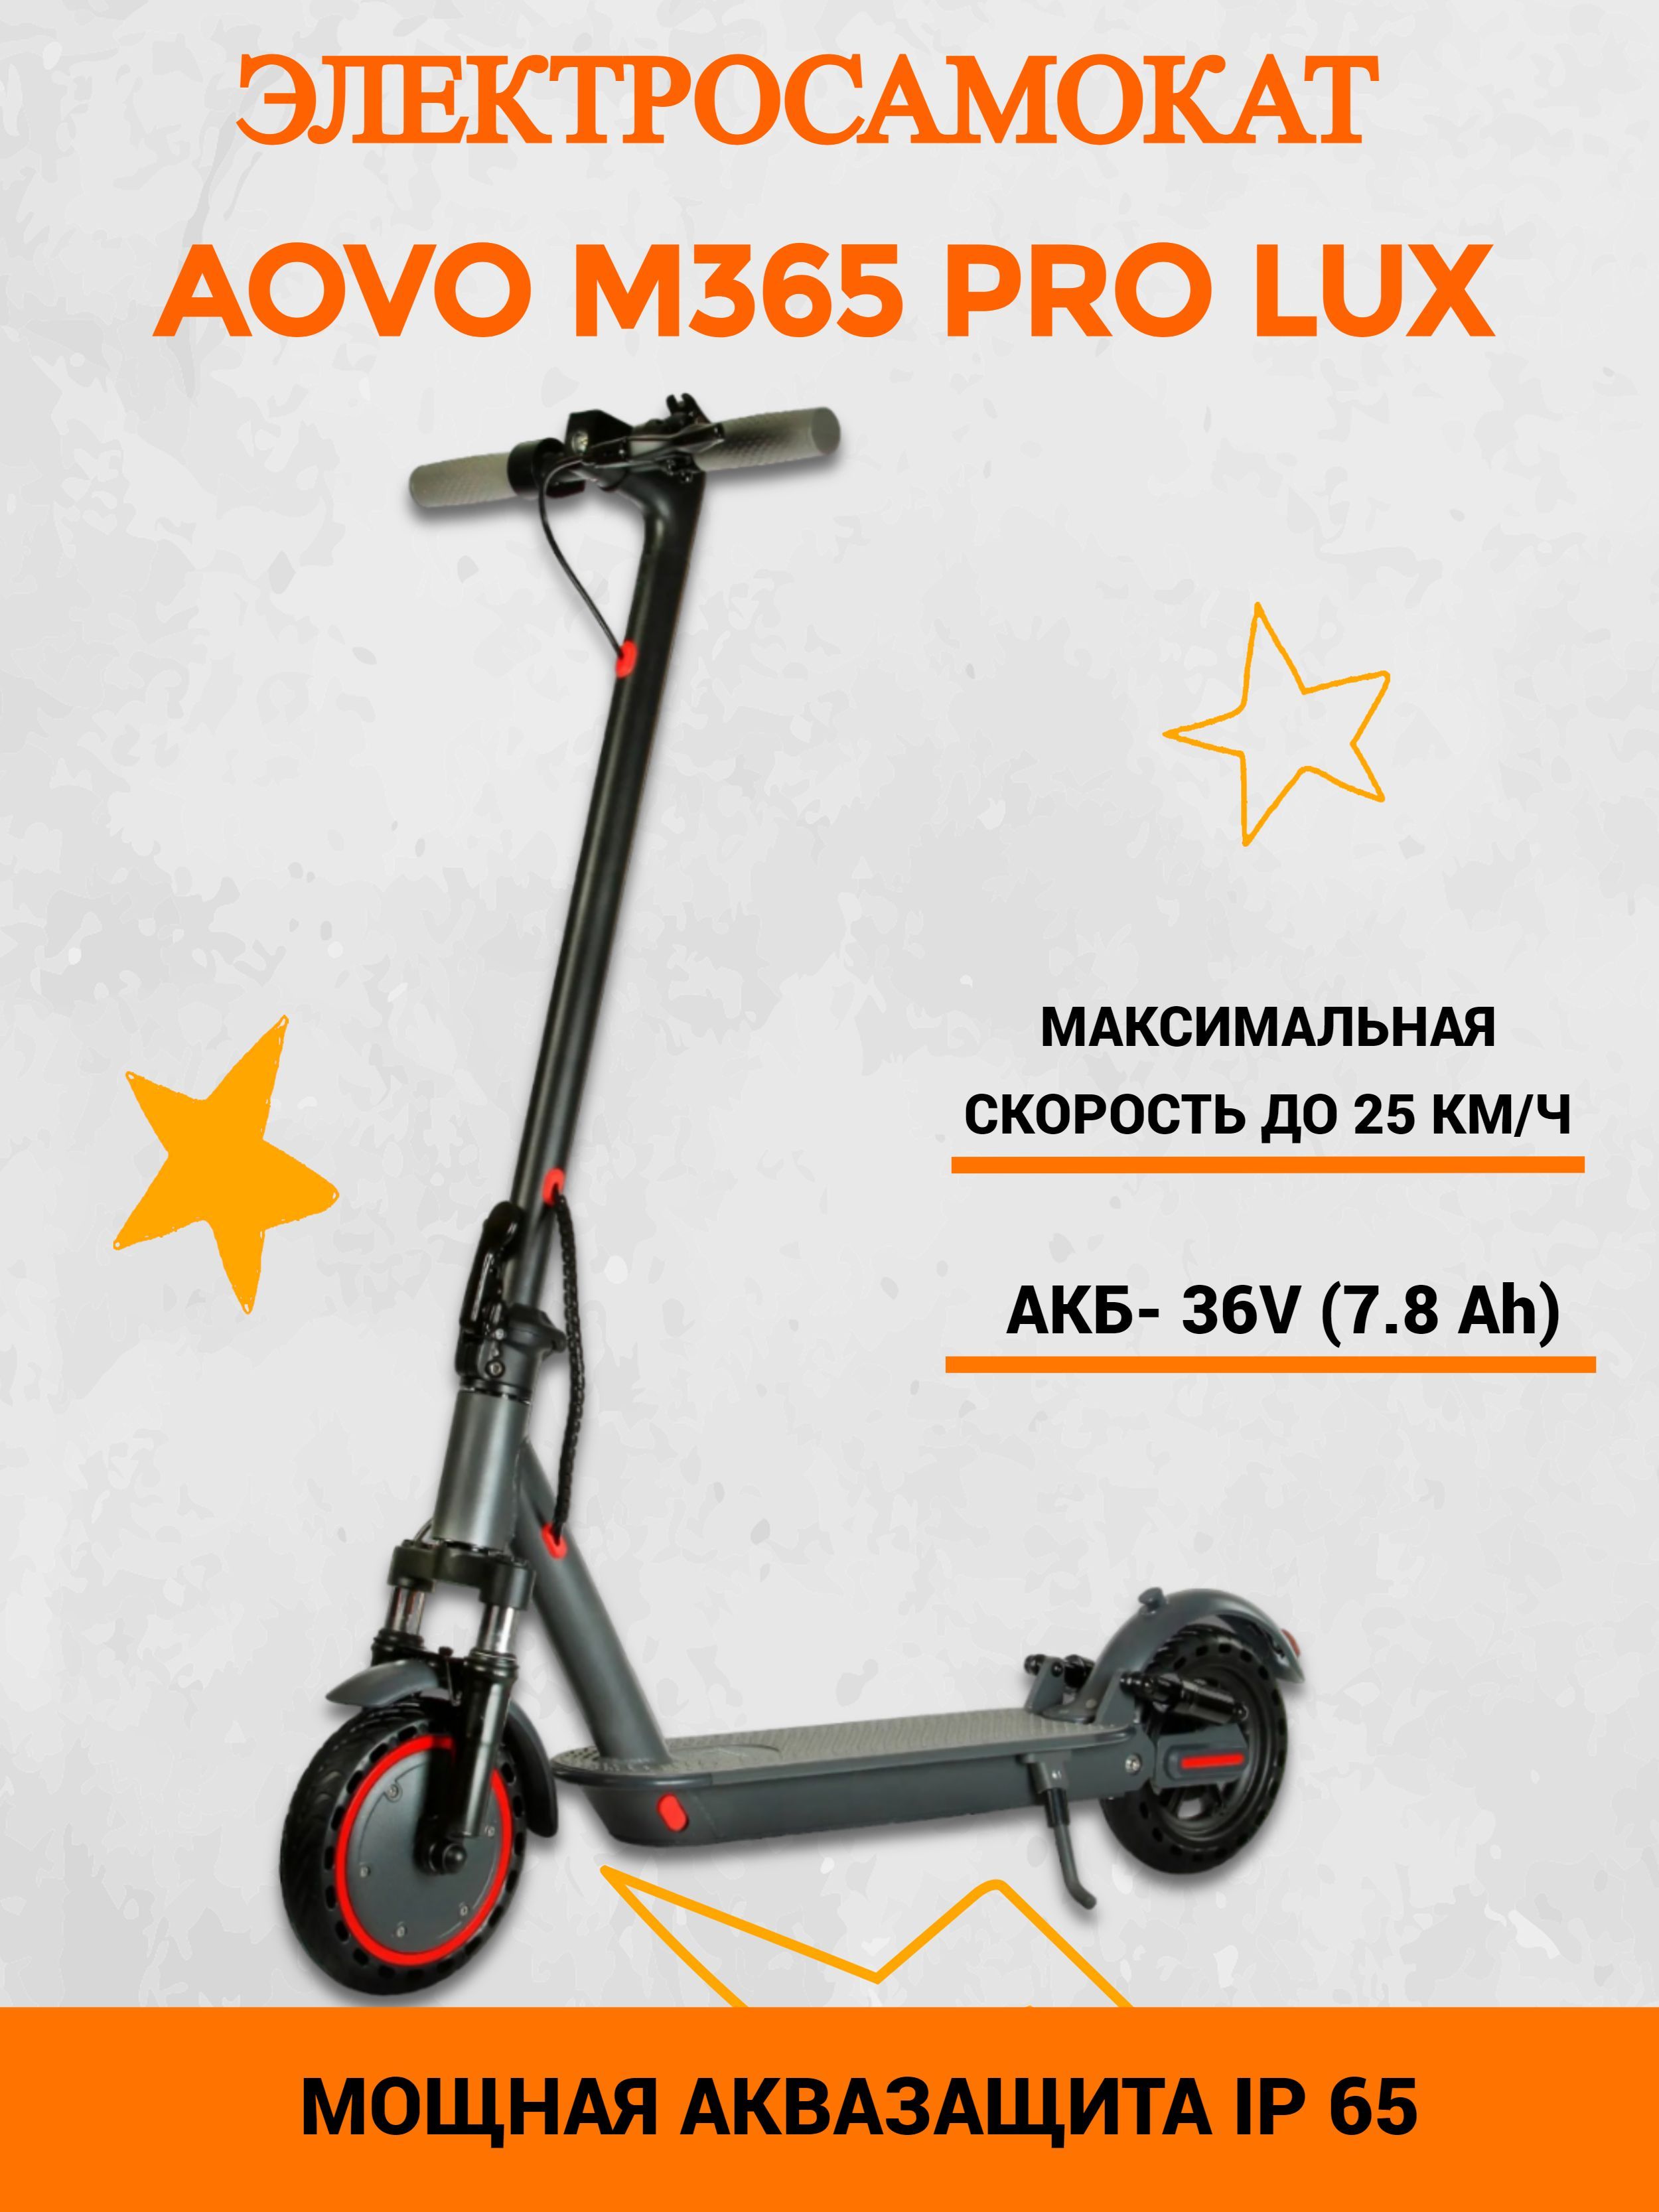 Aovo m365 pro lux